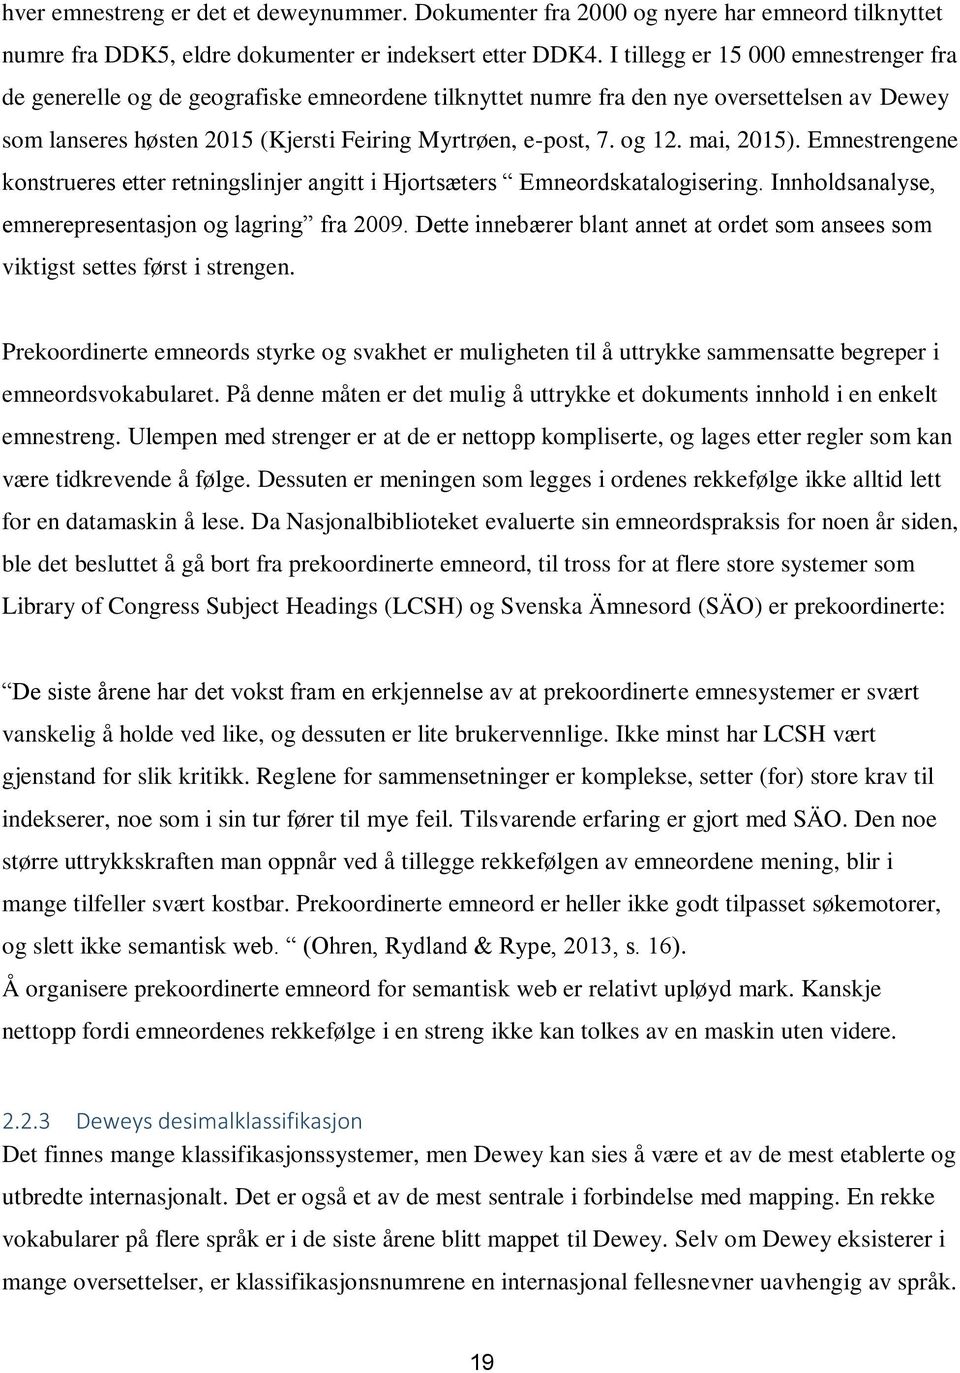 mai, 2015). Emnestrengene konstrueres etter retningslinjer angitt i Hjortsæters Emneordskatalogisering. Innholdsanalyse, emnerepresentasjon og lagring fra 2009.